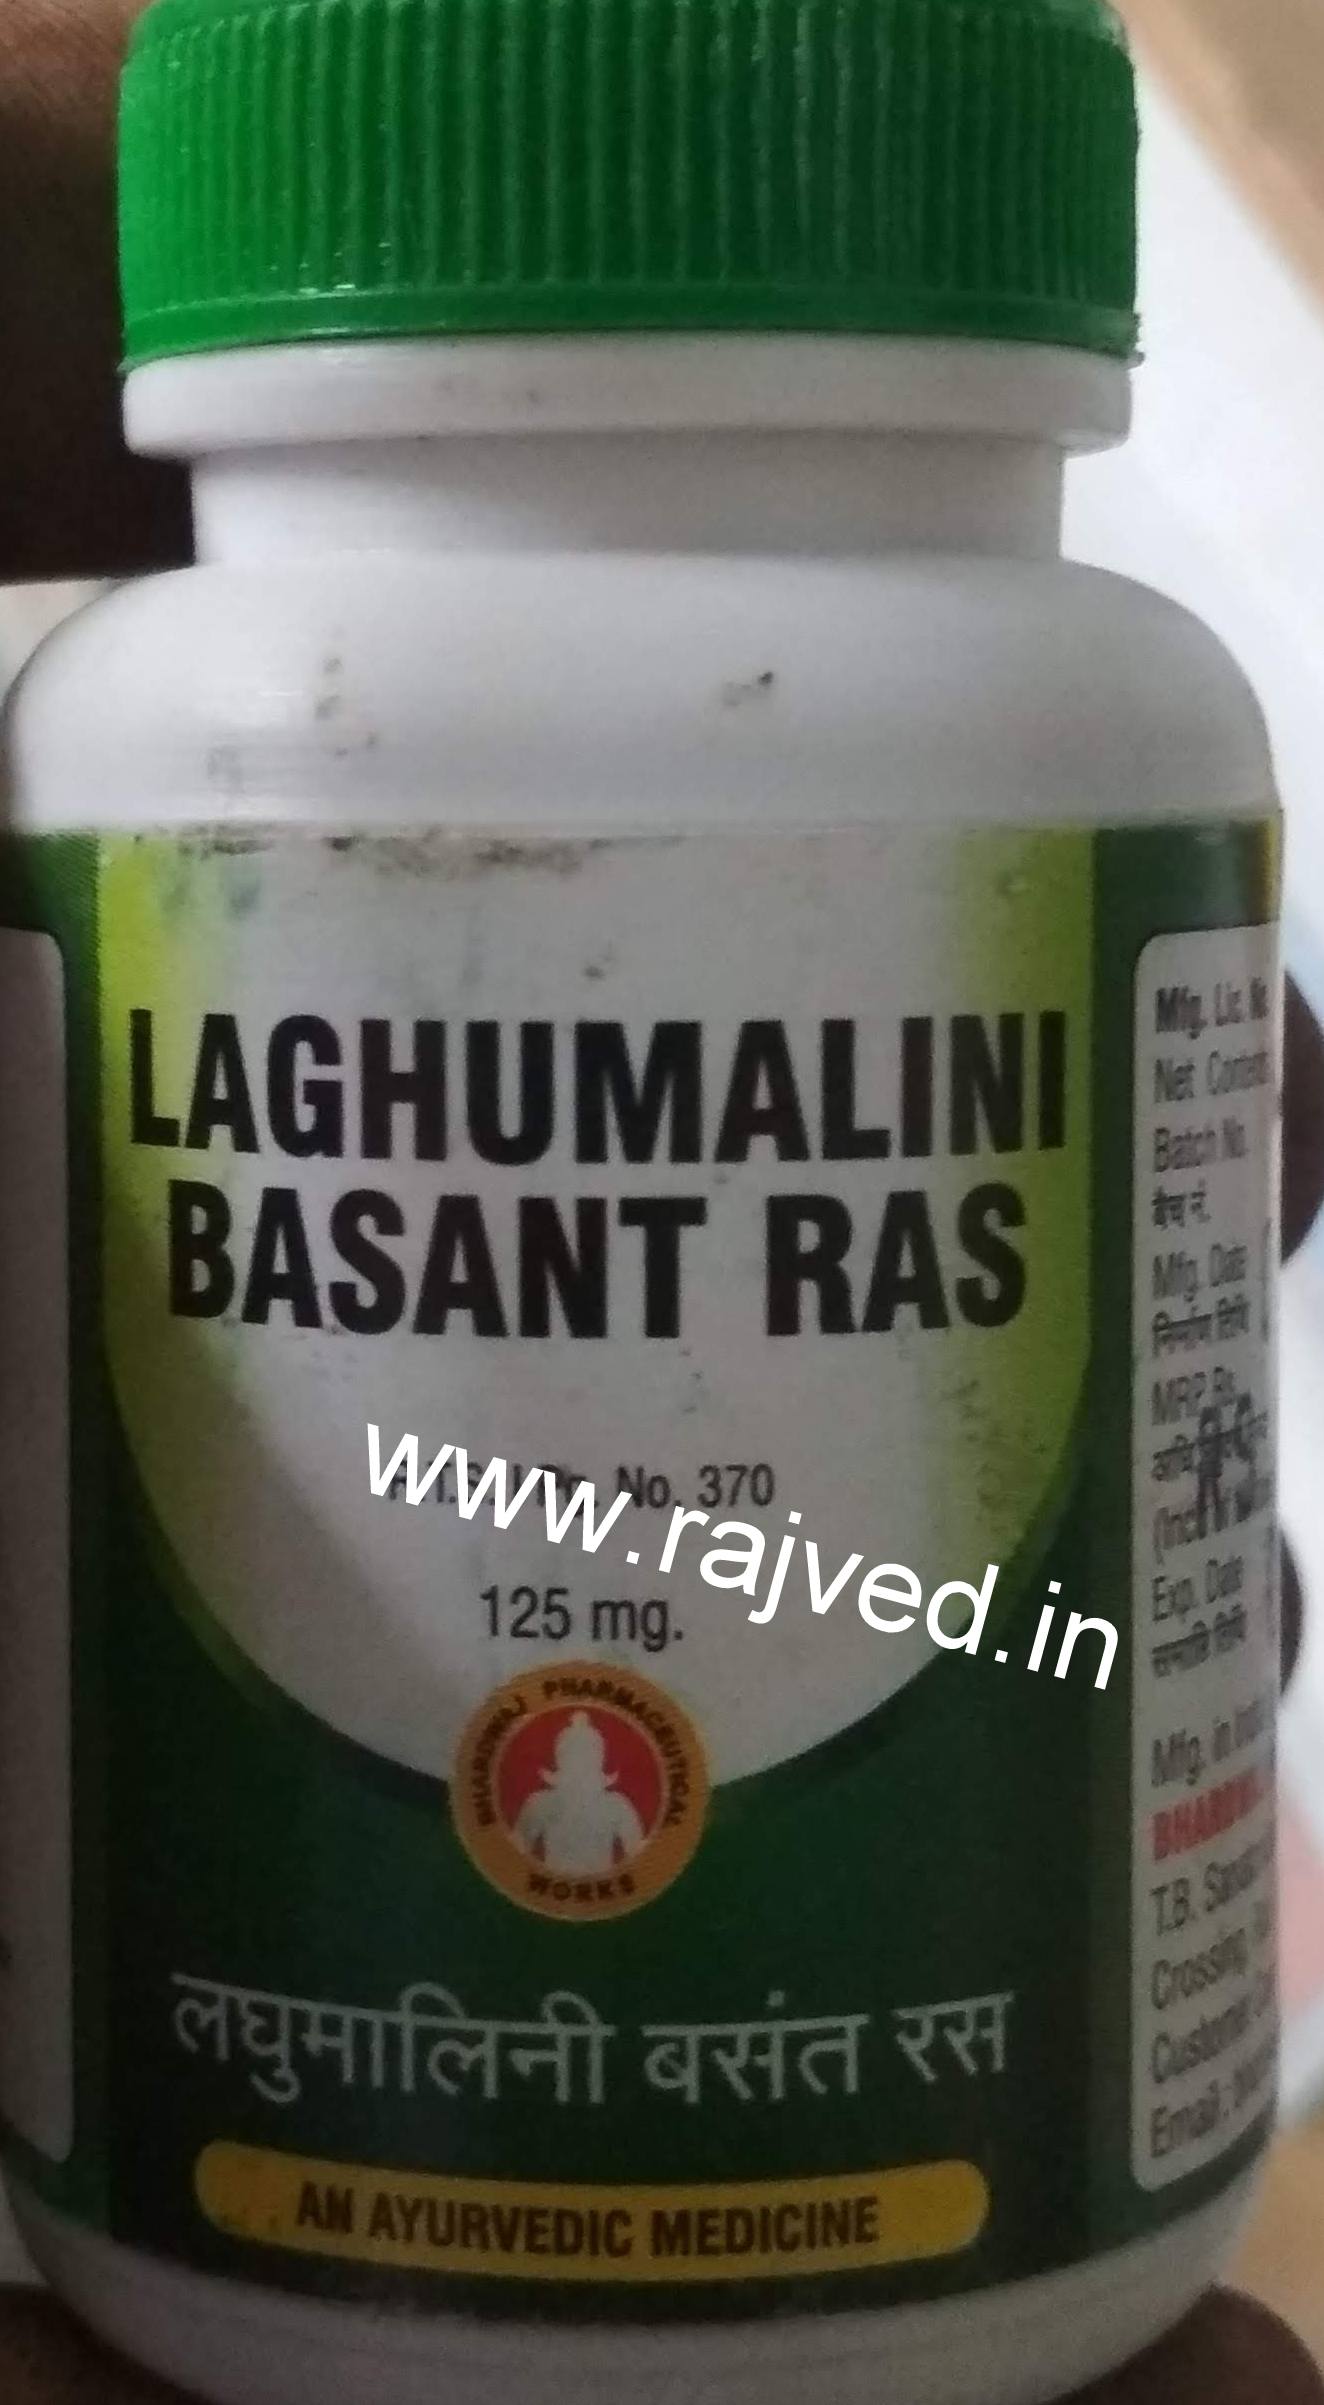 laghumalini basant ras 1kg upto 20% off free shipping bhardwaj pharmaceuticals indore